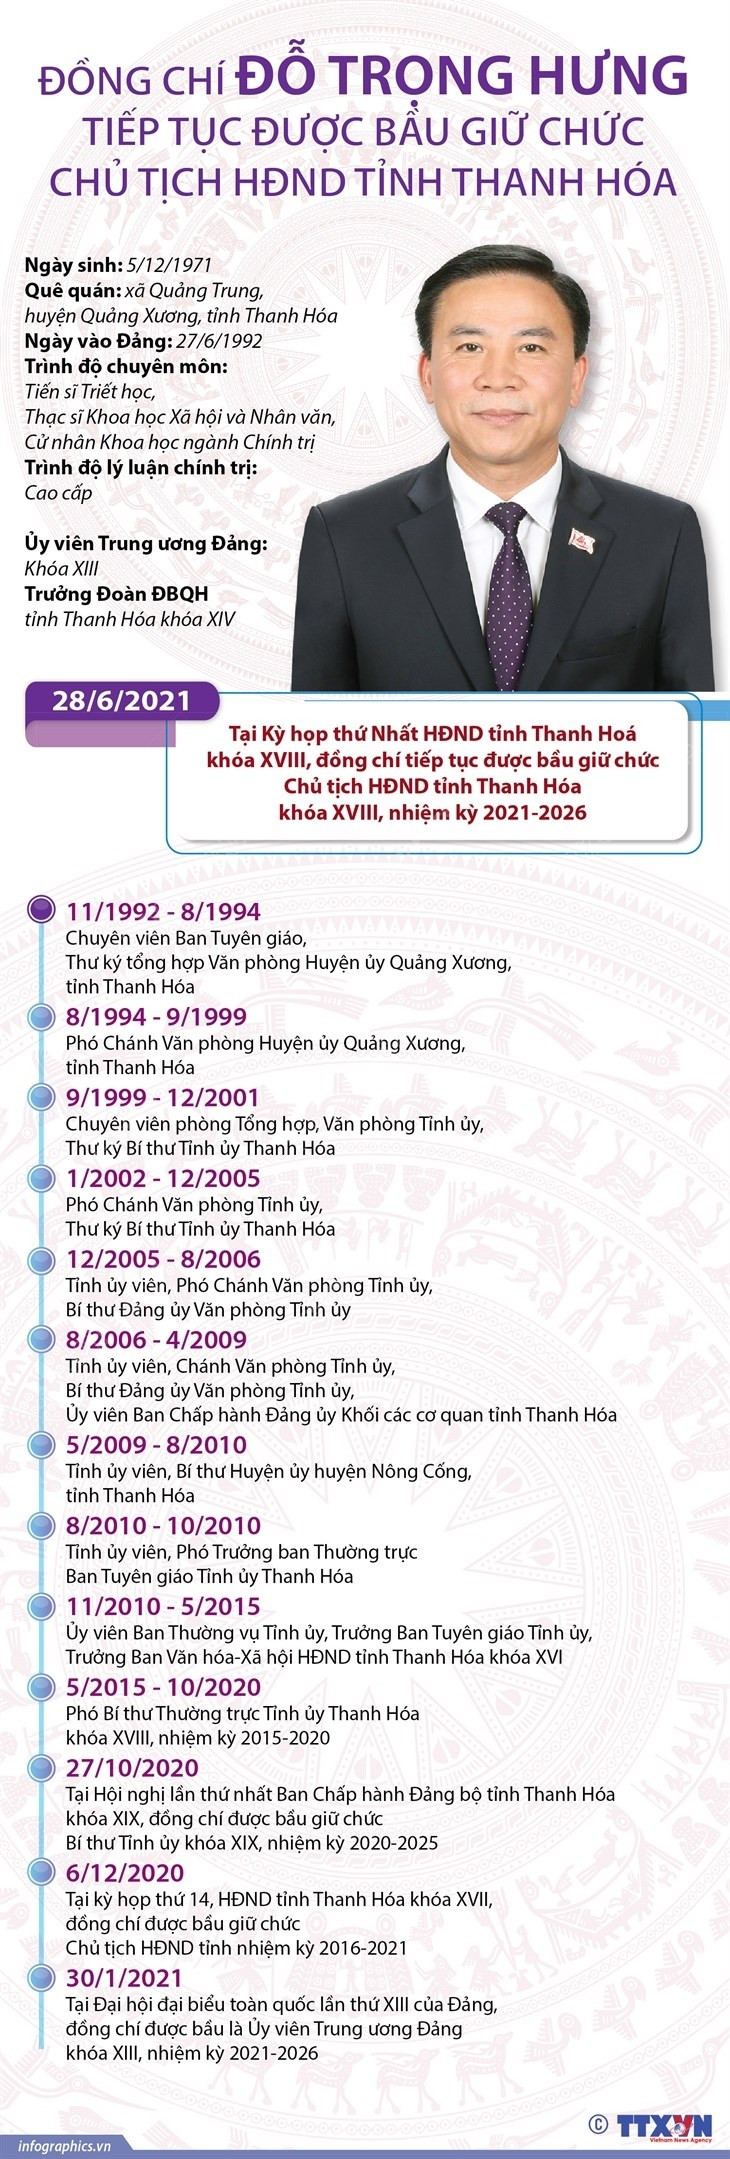 [Infographics] Ong Do Trong Hung giu chuc Chu tich HDND tinh Thanh Hoa hinh anh 1